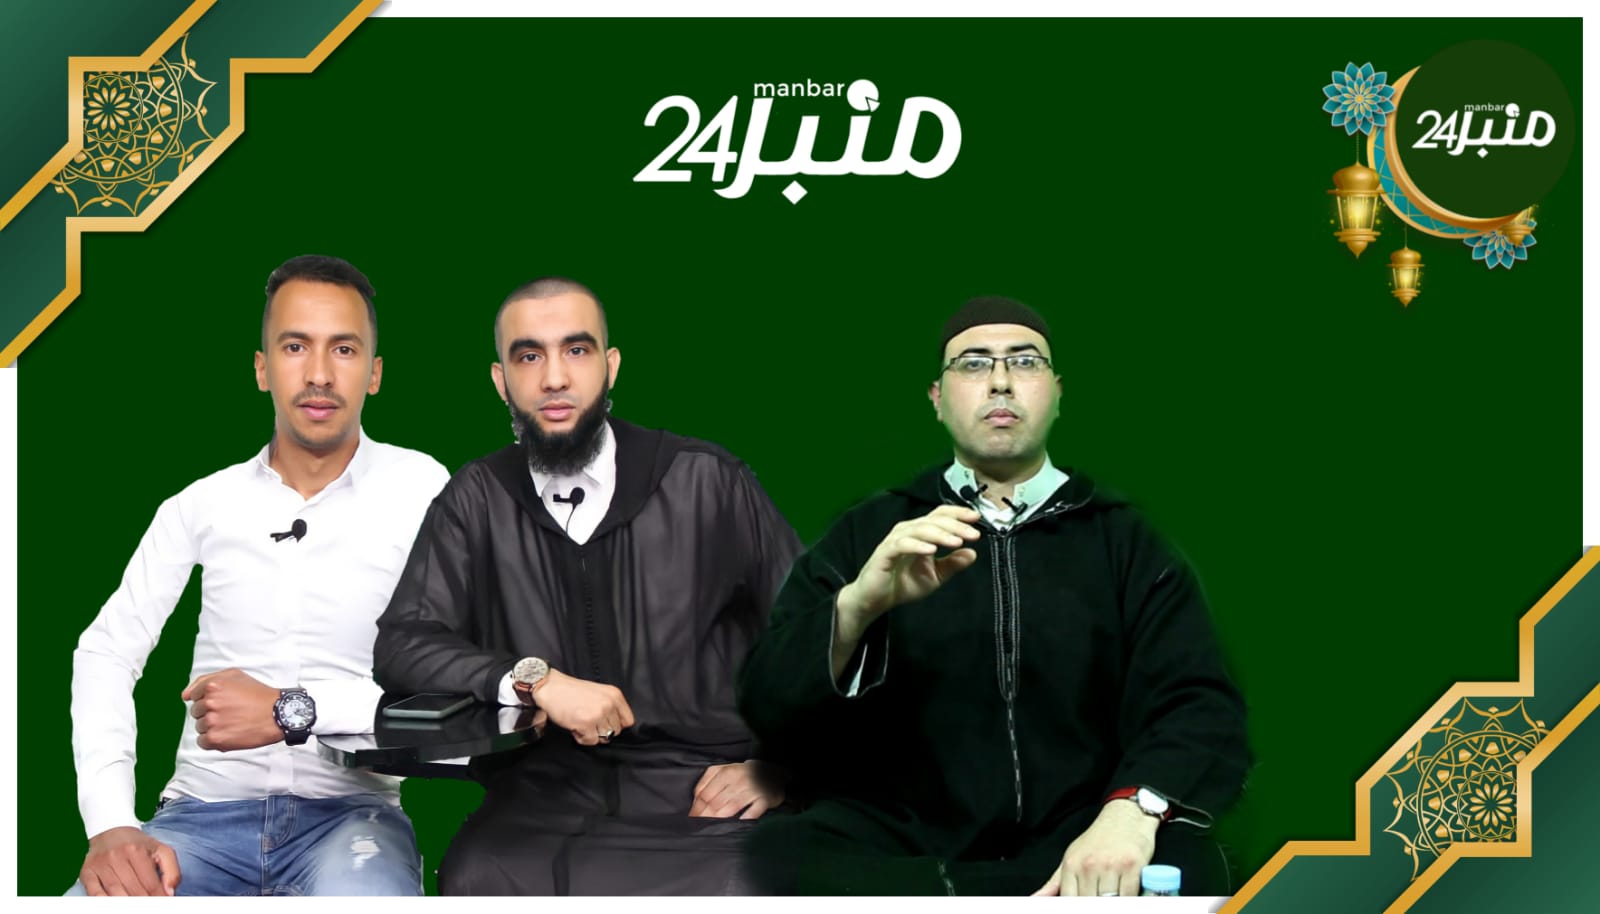 جريدة"منبر24" تقدم برامج شيقة ومتنوعة طيلة شهر رمضان